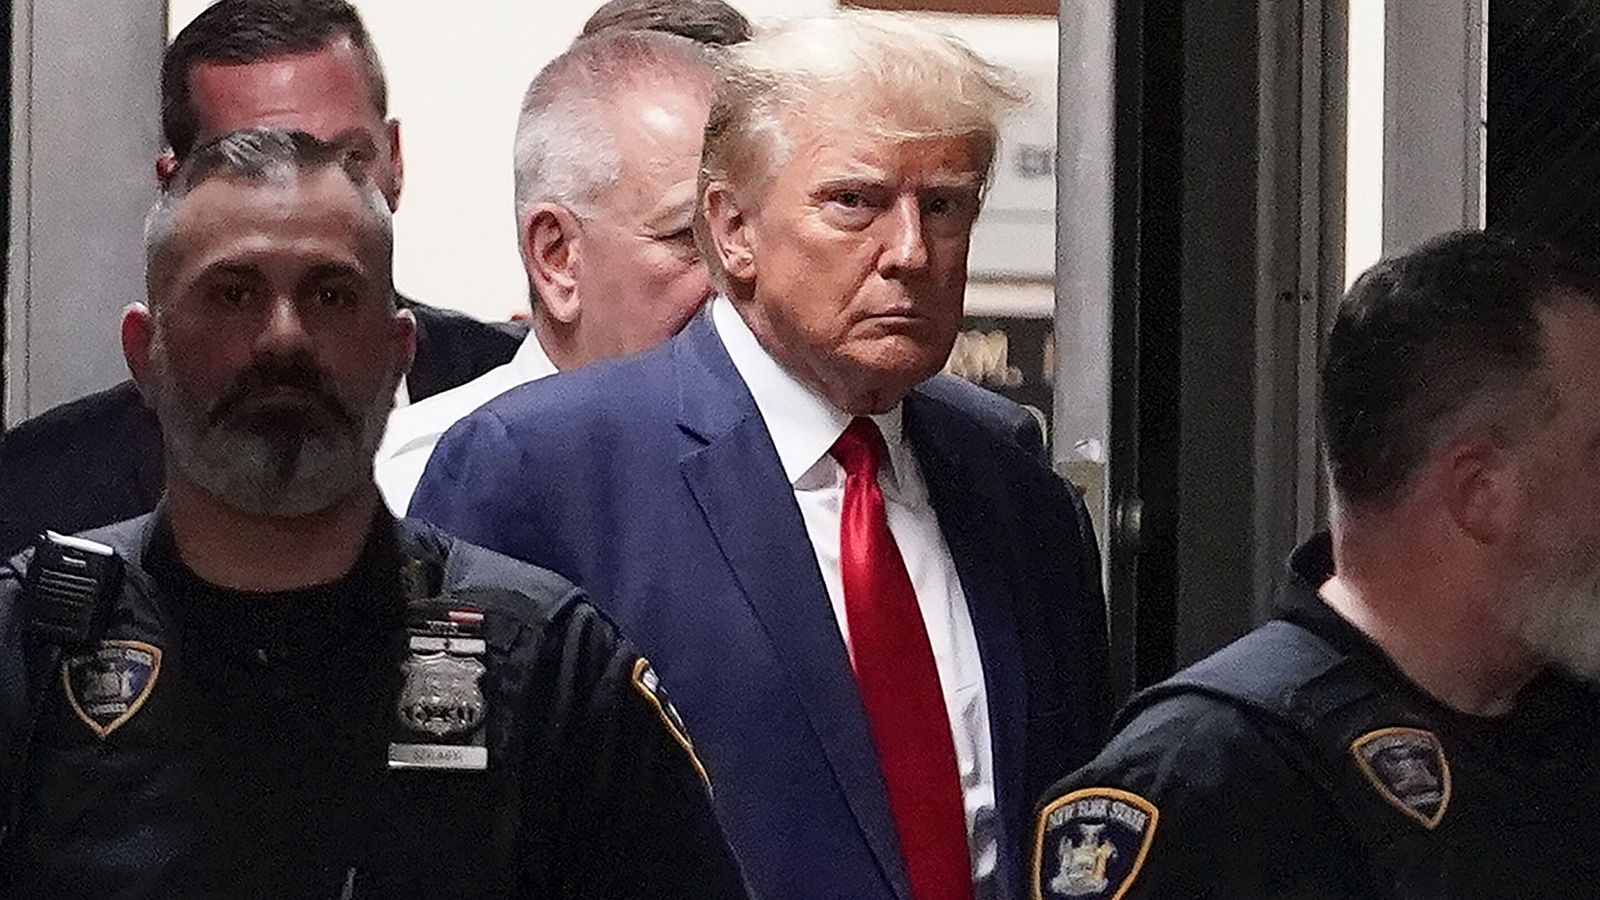 Donald Trump en una imagen de archivo custodiado por la policía